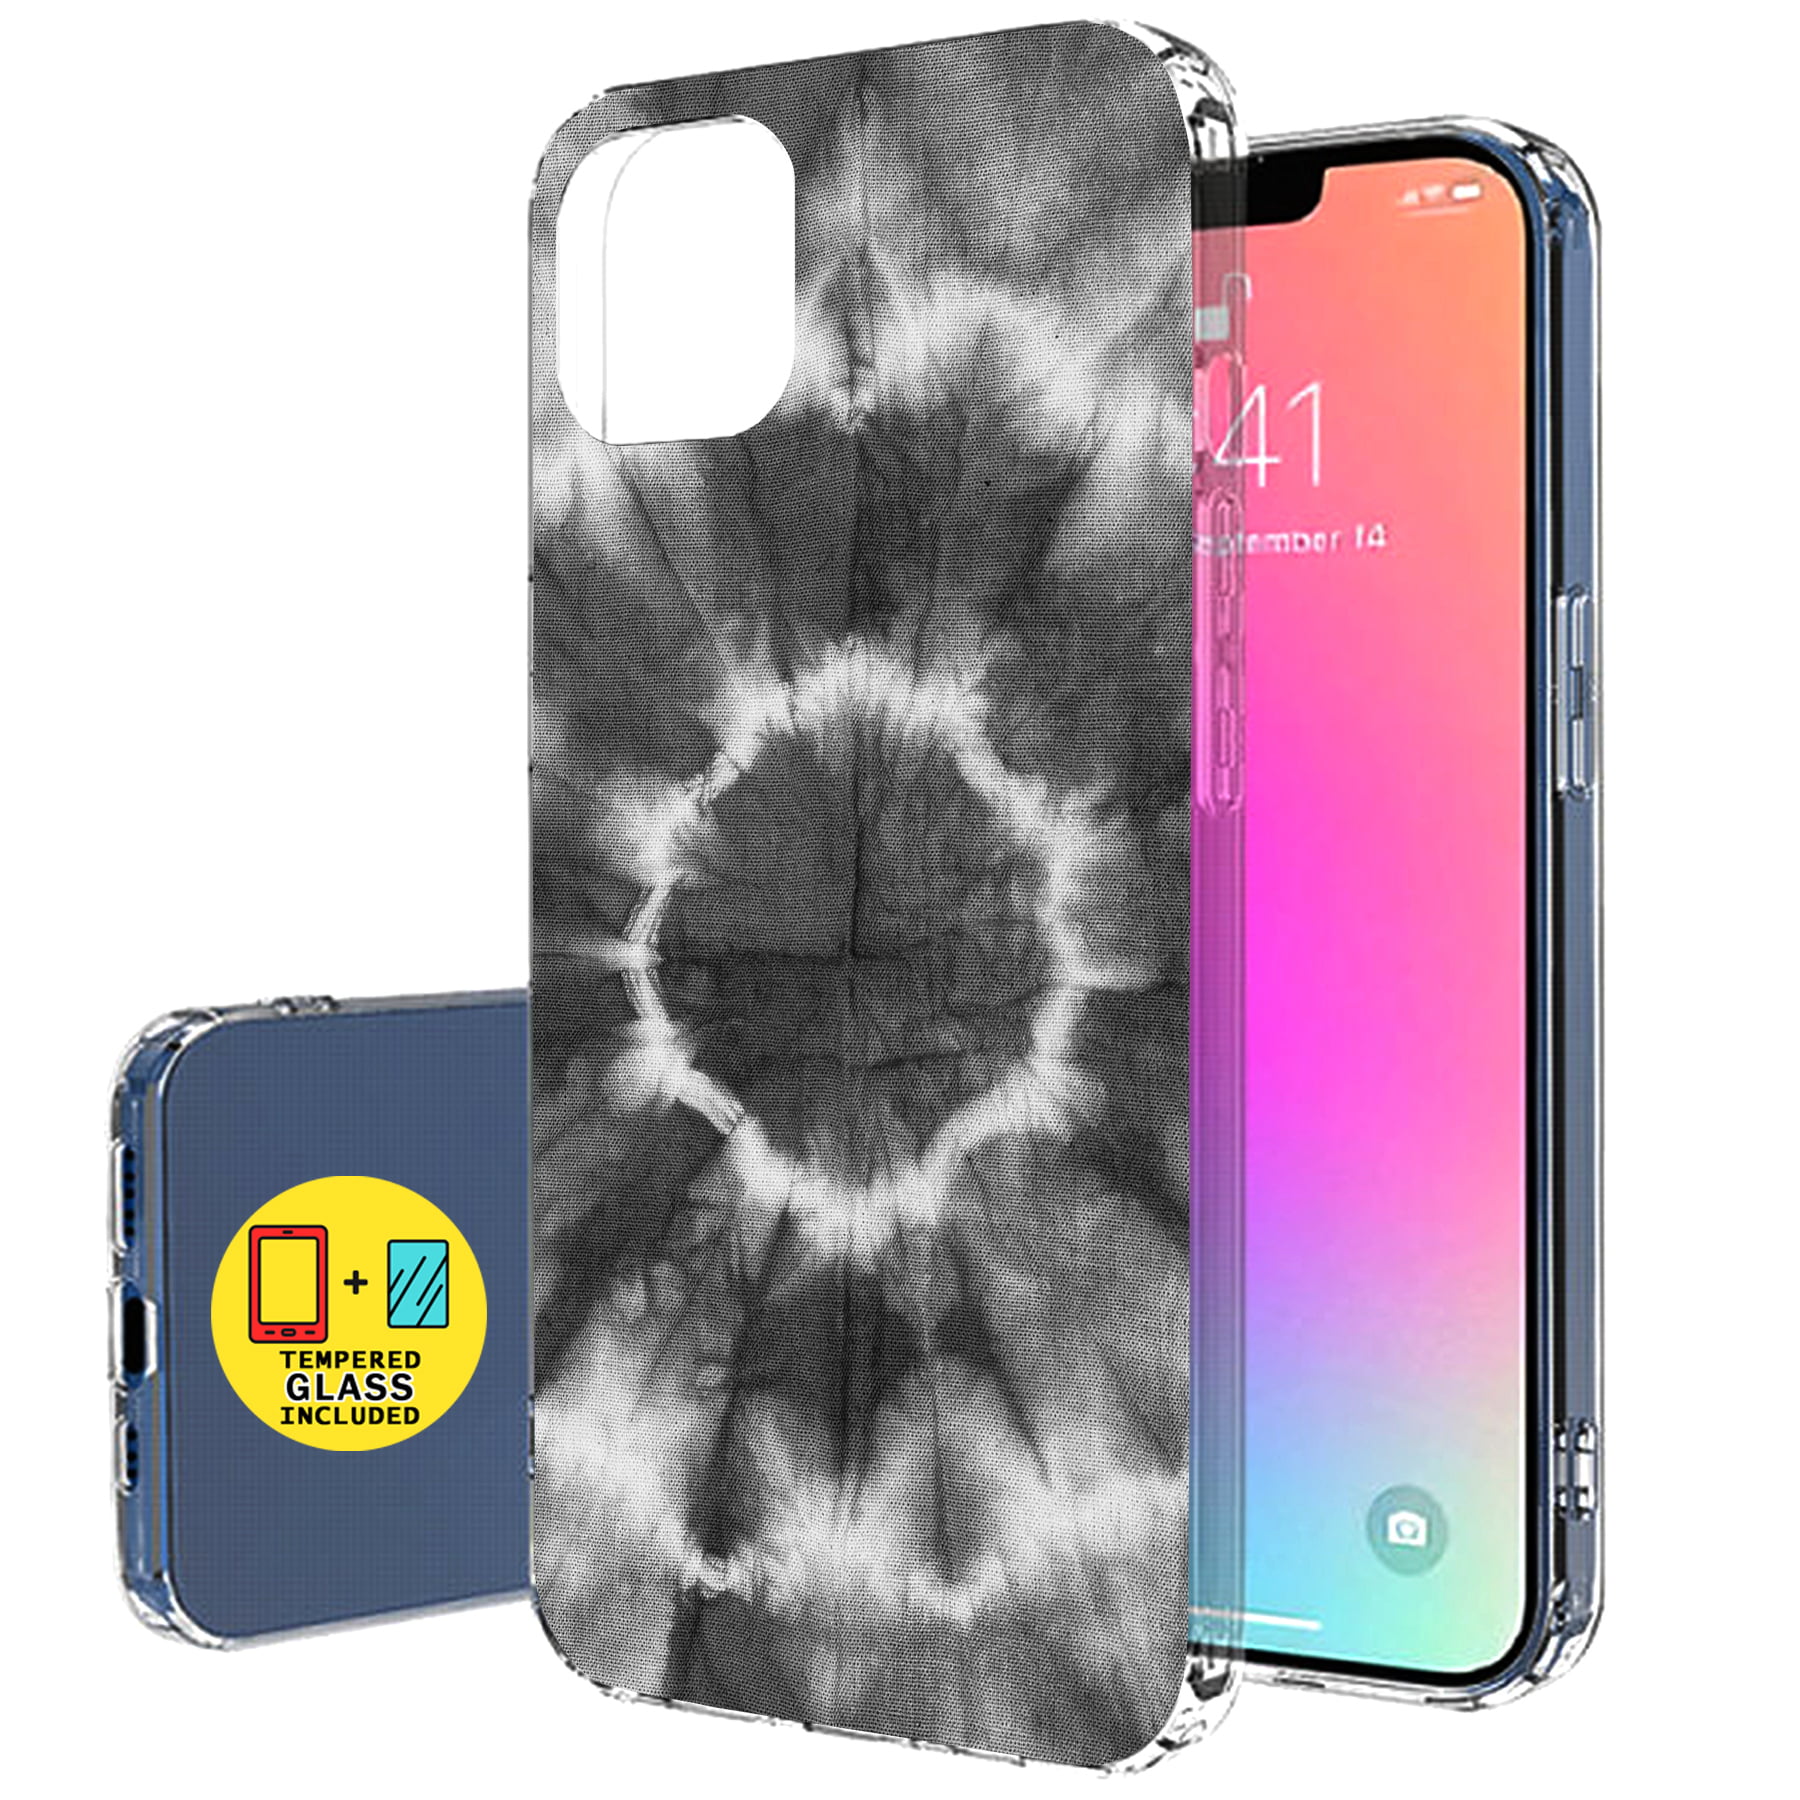 Gorilla Tag-Gorilla Tag Pfp Maker Soft Glass Case For Iphone 14 13